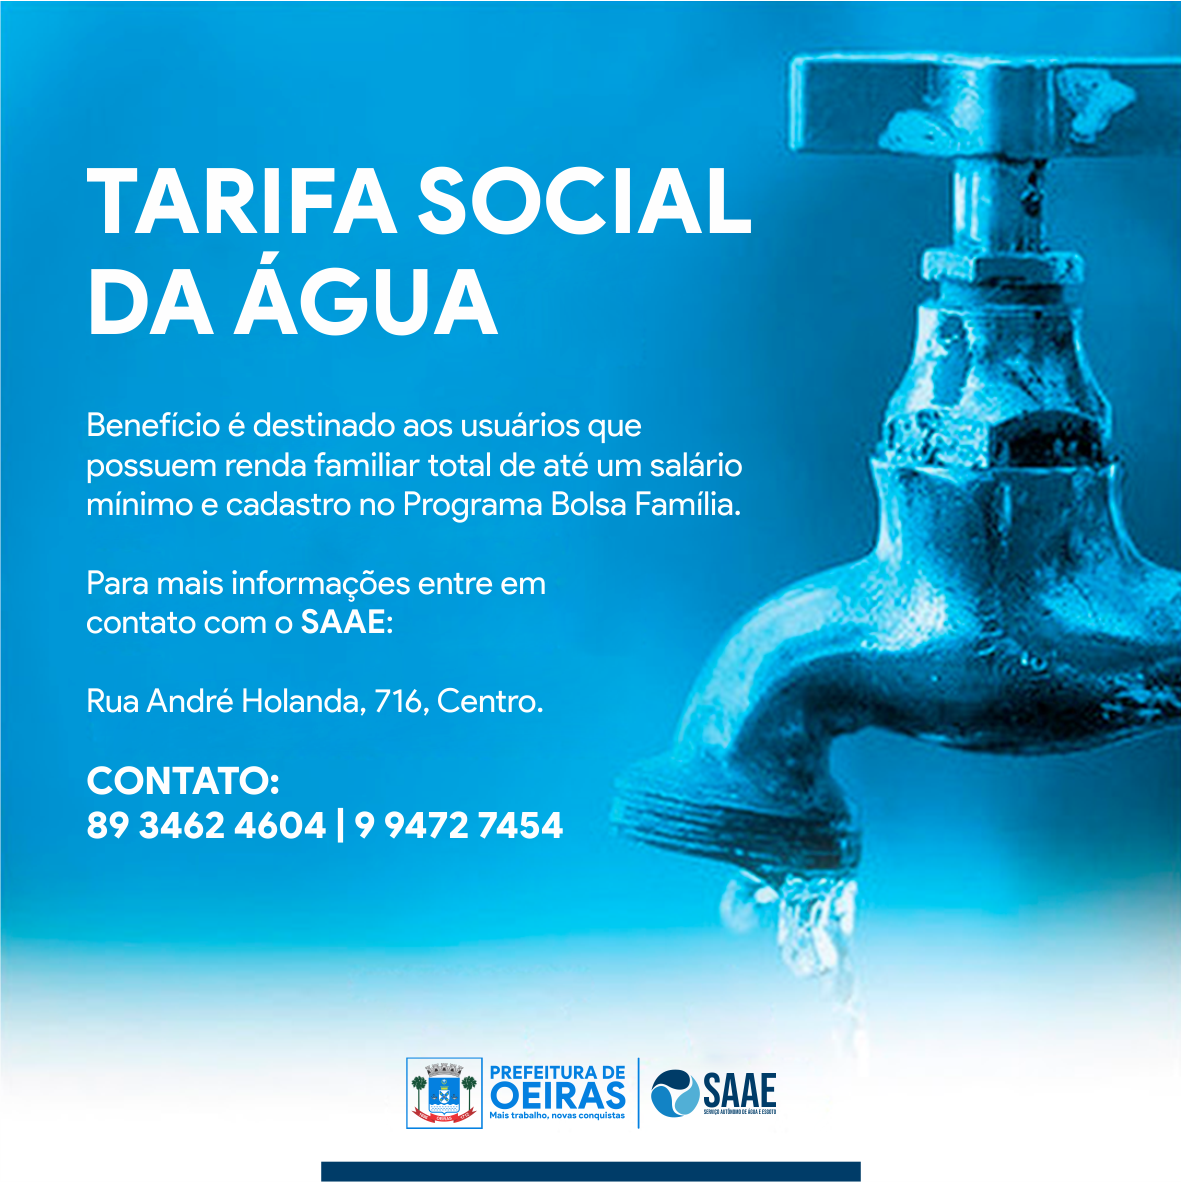 SAAE já cadastrou mais de 300 famílias na Tarifa Social em Oeiras